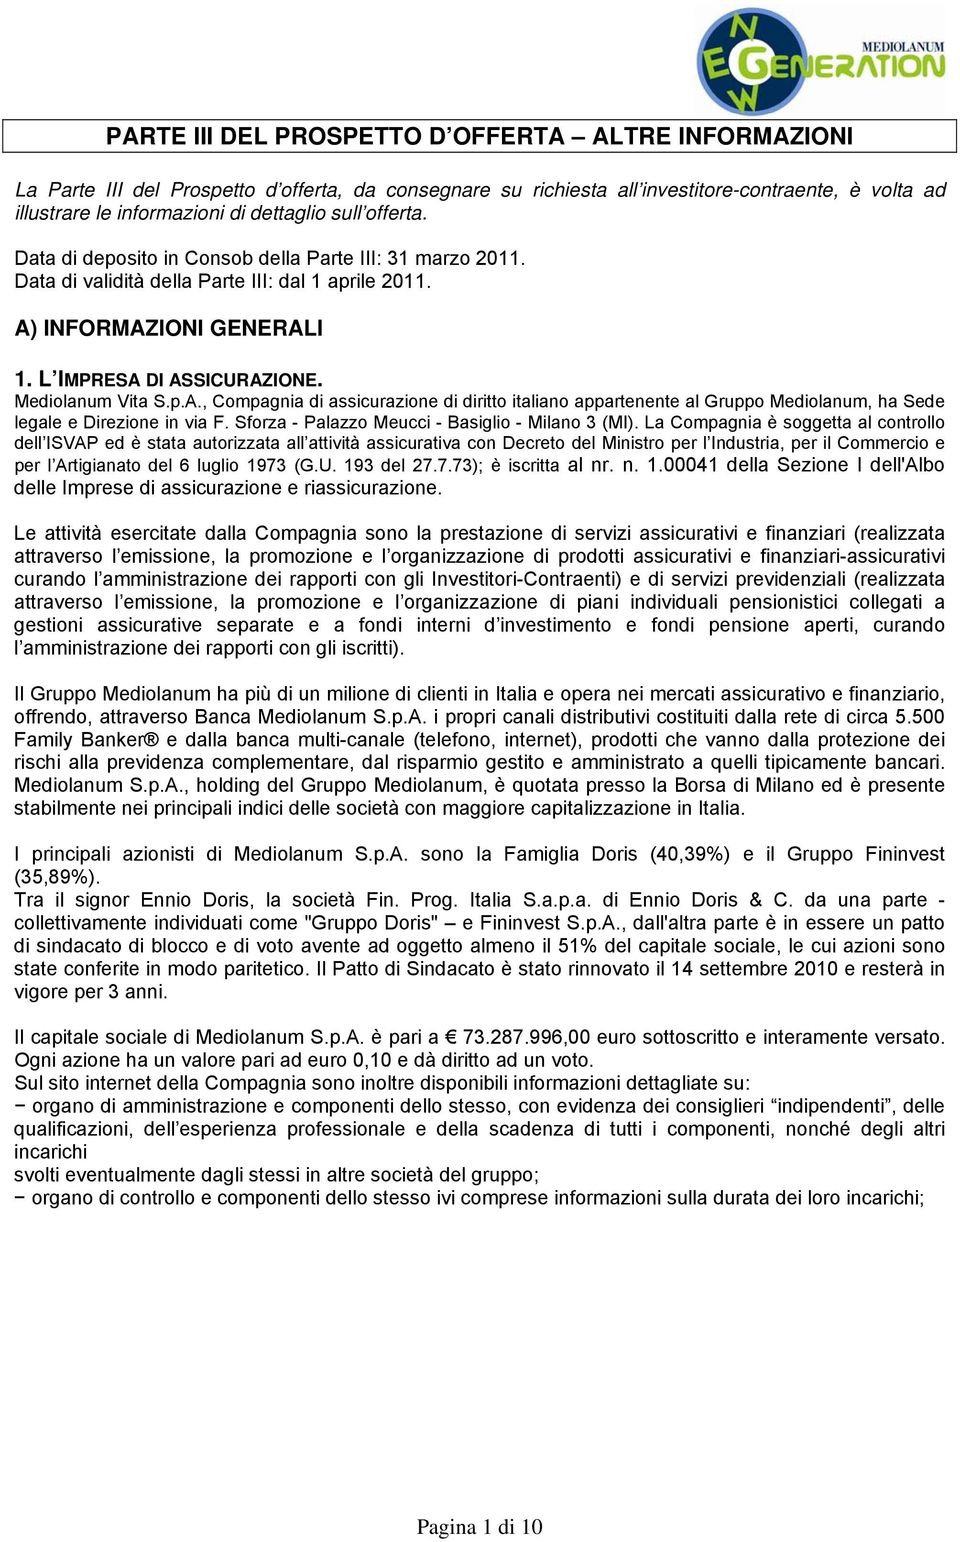 p.A., Compagnia di assicurazione di diritto italiano appartenente al Gruppo Mediolanum, ha Sede legale e Direzione in via F. Sforza - Palazzo Meucci - Basiglio - Milano 3 (MI).